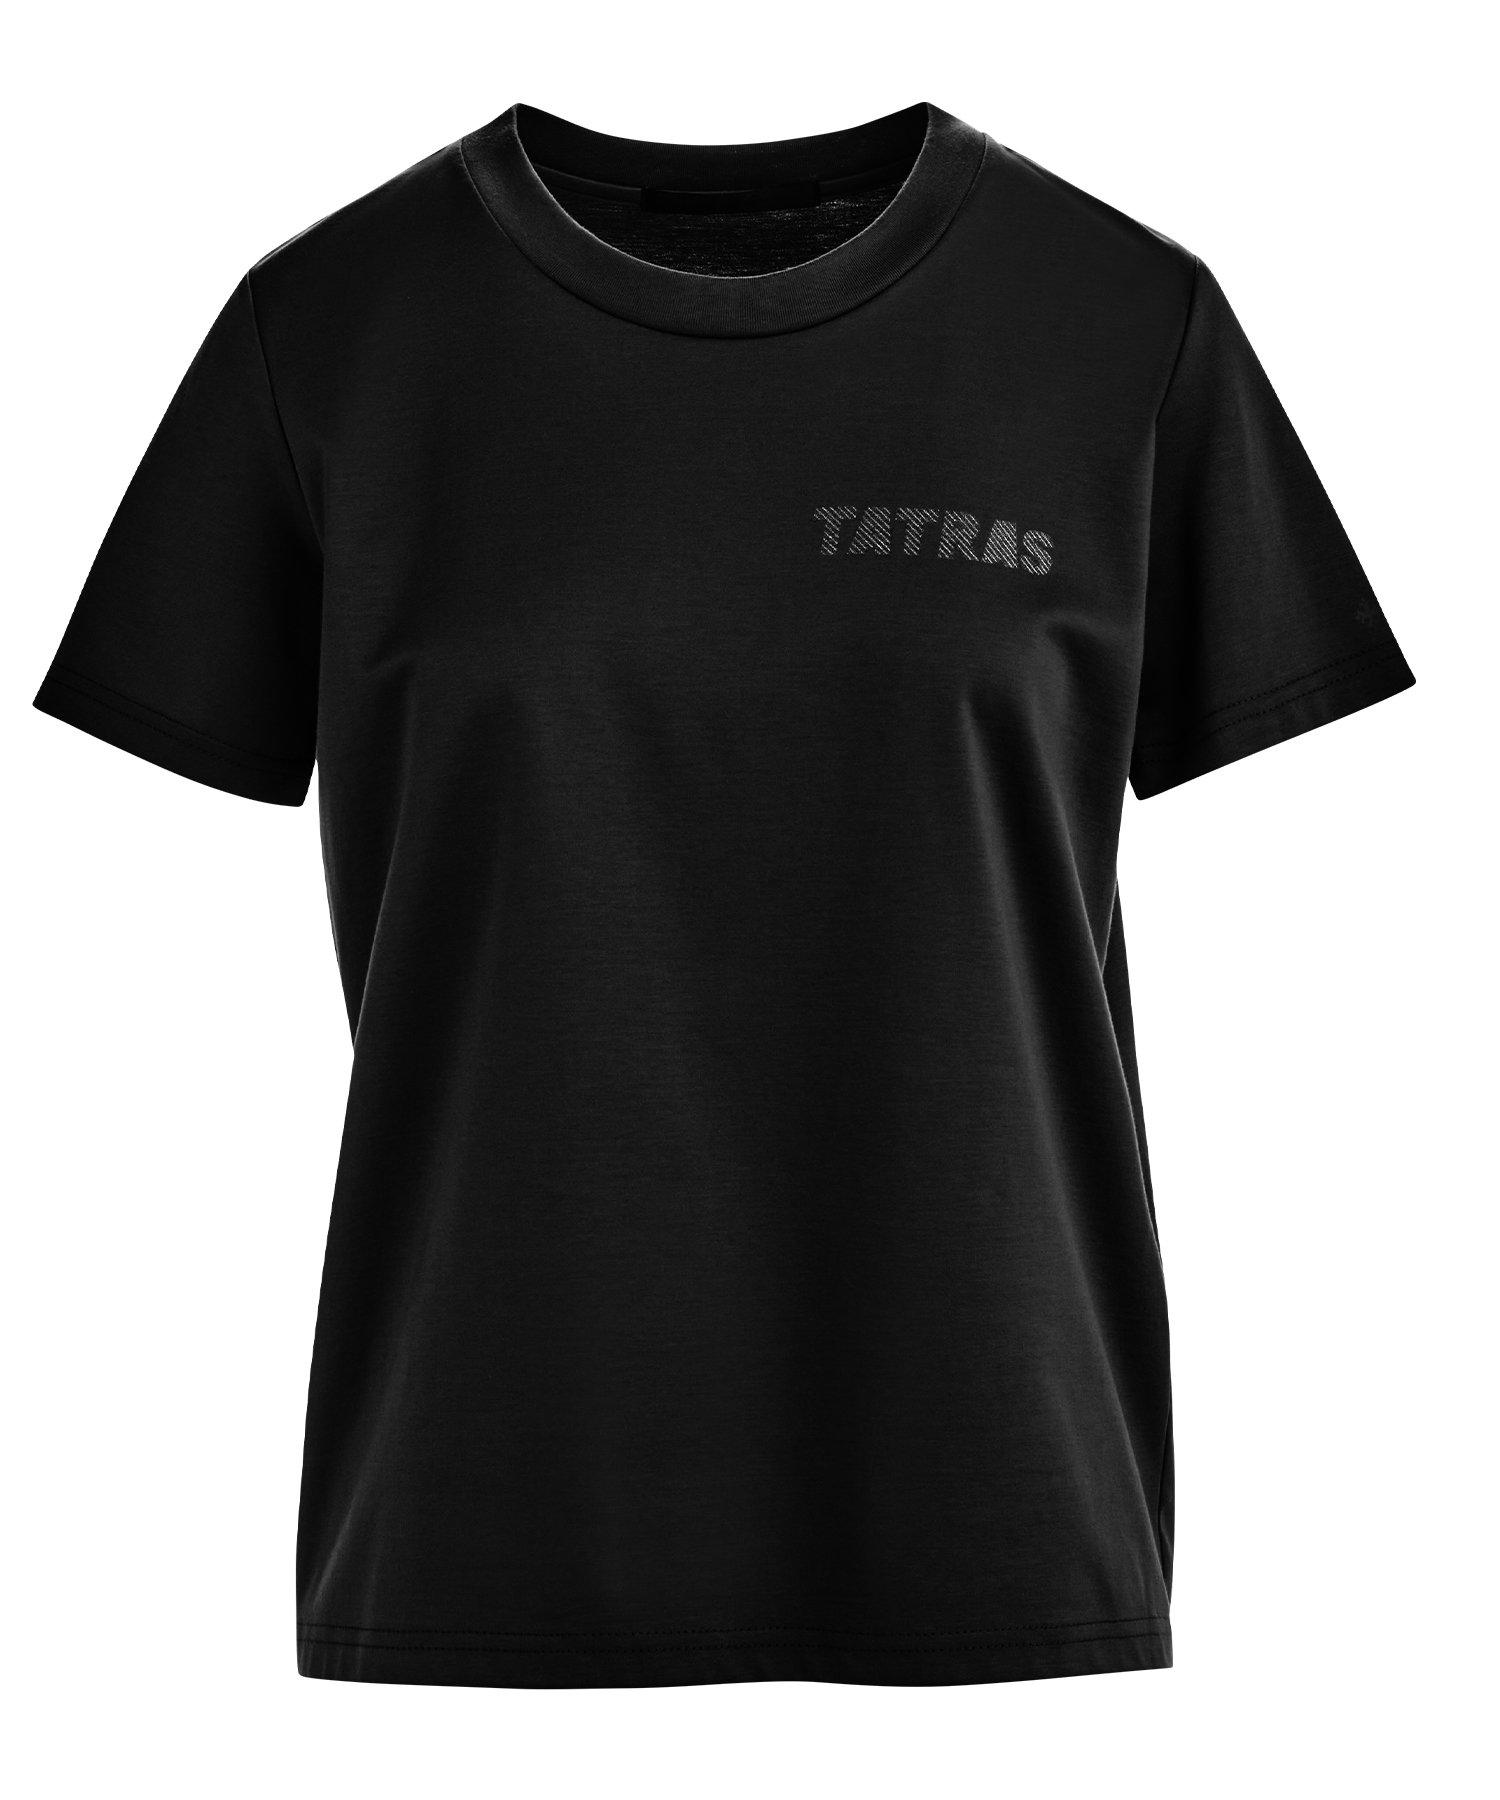 優先購入【TATRAS】タトラス ロゴTシャツ トップス